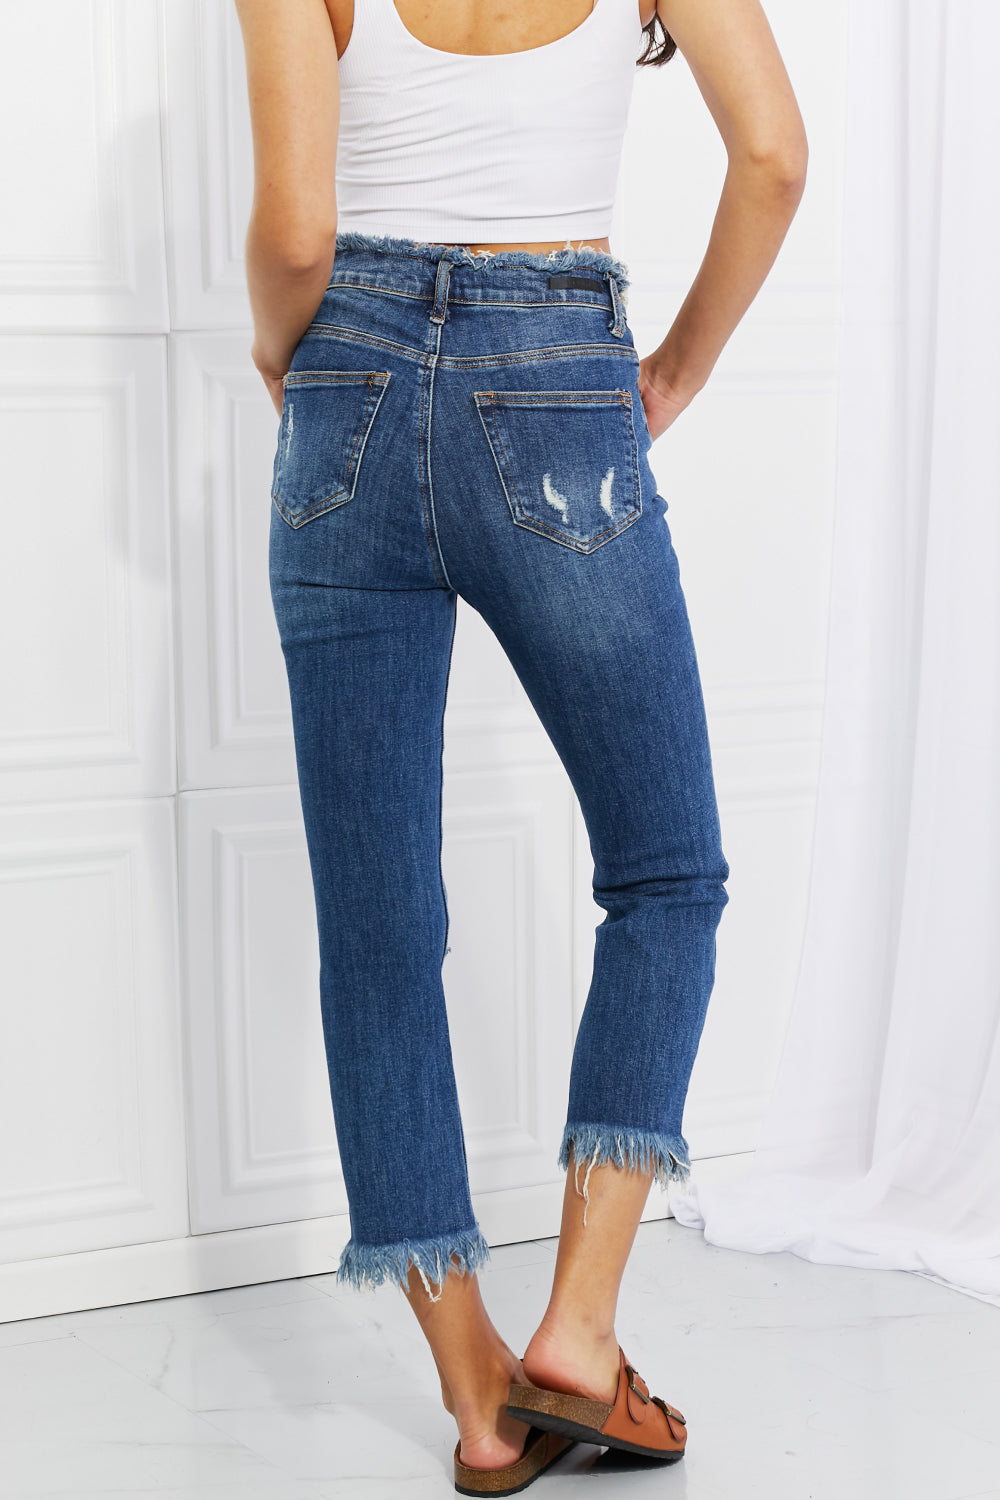 RISEN Undone Chic Straight Leg Jeans-Trendsi-[option4]-[option5]-[option6]-[option7]-[option8]-Shop-Boutique-Clothing-for-Women-Online